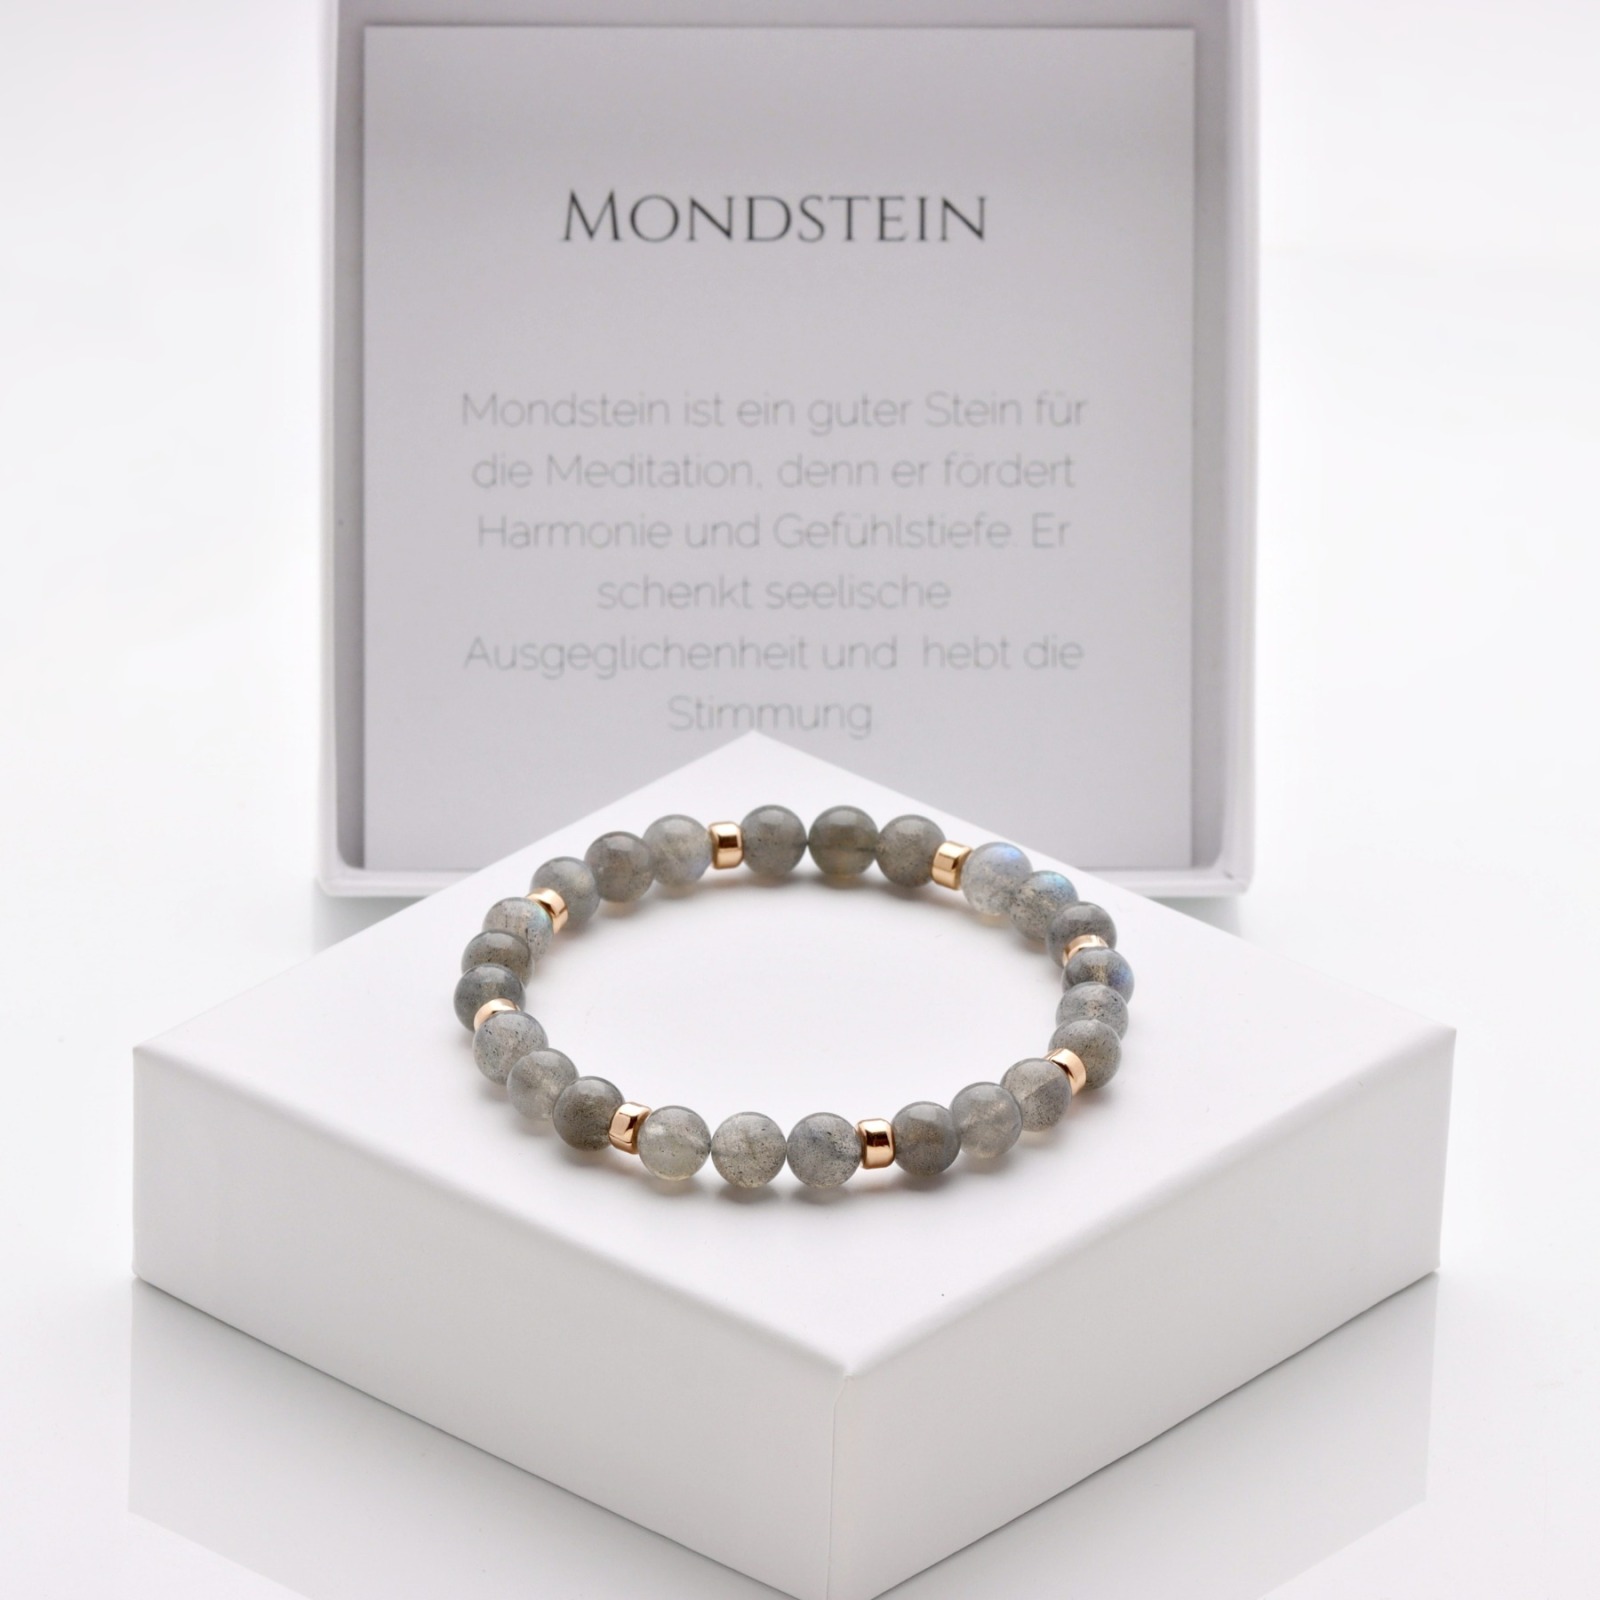 Echtes Mondstein Armband Damen, grau, elastisch, 925 Silber oder vergoldet, perfekte Geschenk-Idee